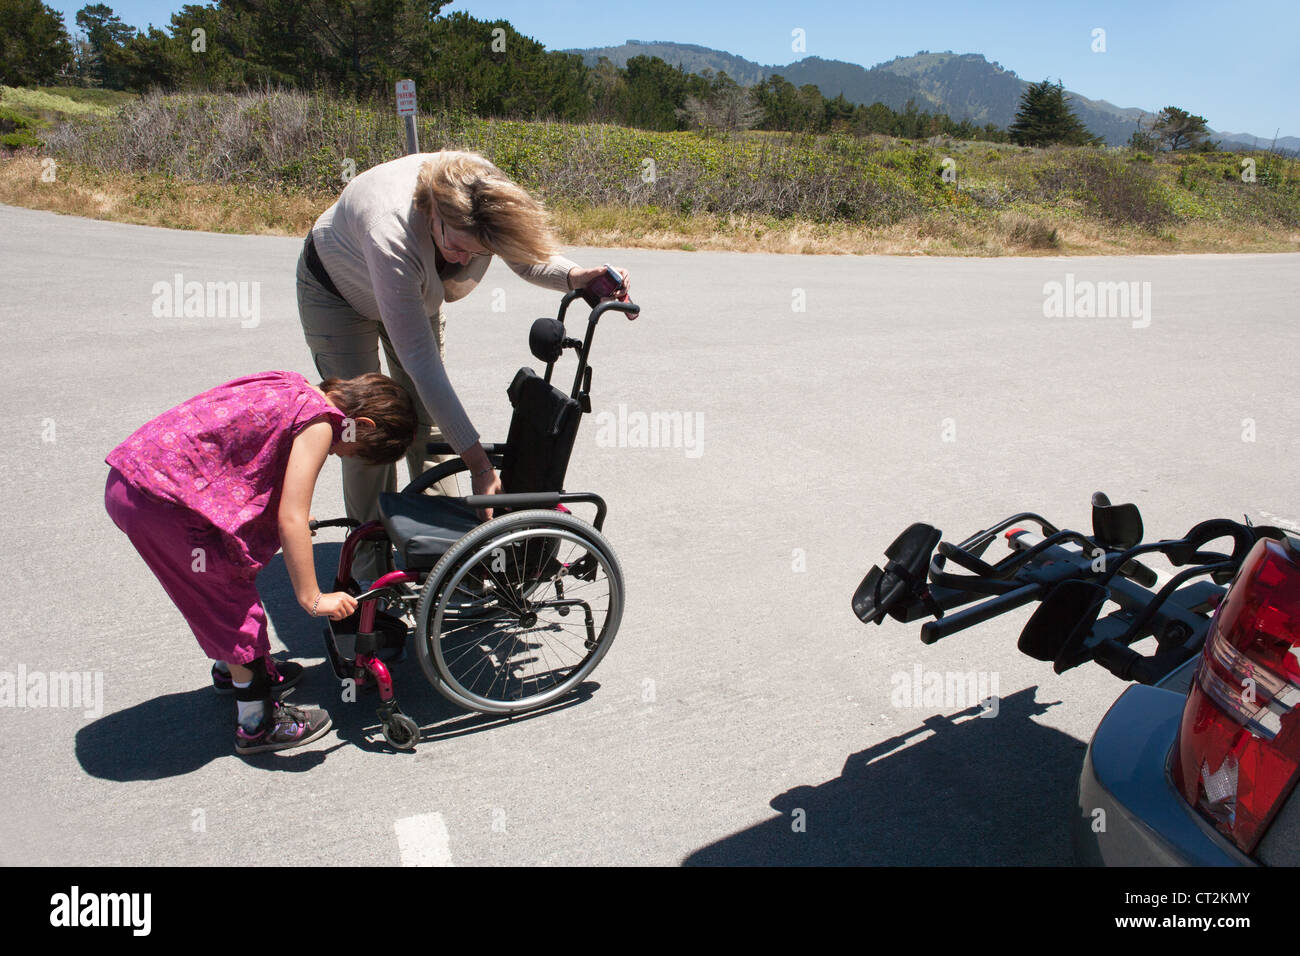 La madre y la hija de siete años ajustar la silla de ruedas para niño con distrofia muscular antes de ir de excursión en el norte de California, Estados Unidos. Foto de stock